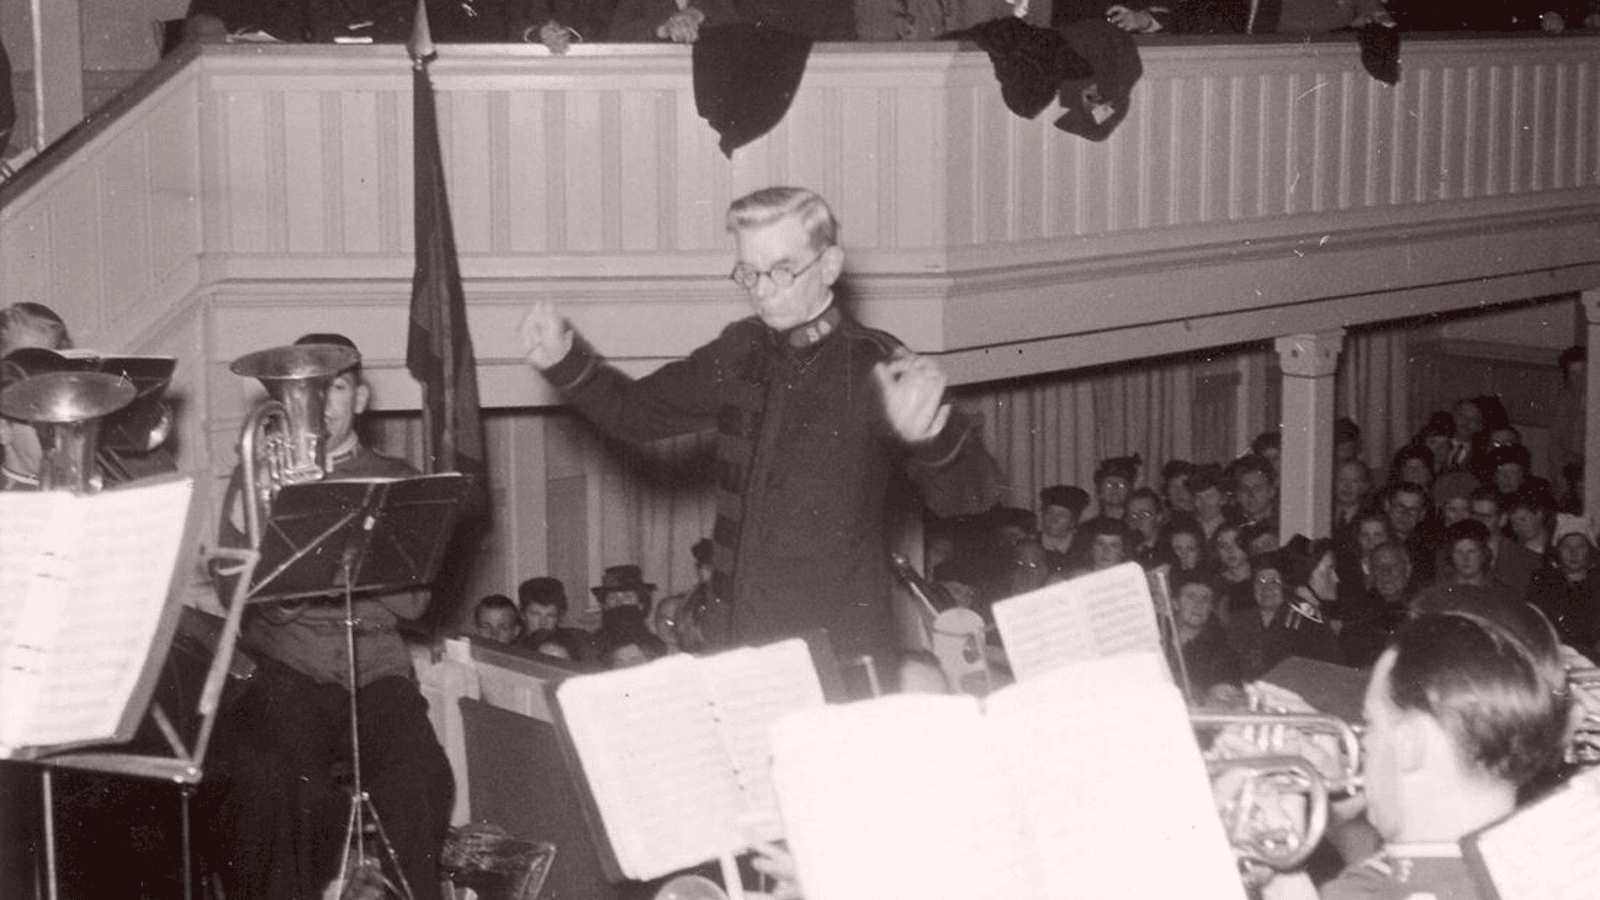  Tranås Musikkårs 50-årsjubileum år 1946 med gästdirigent Bramwell Coles